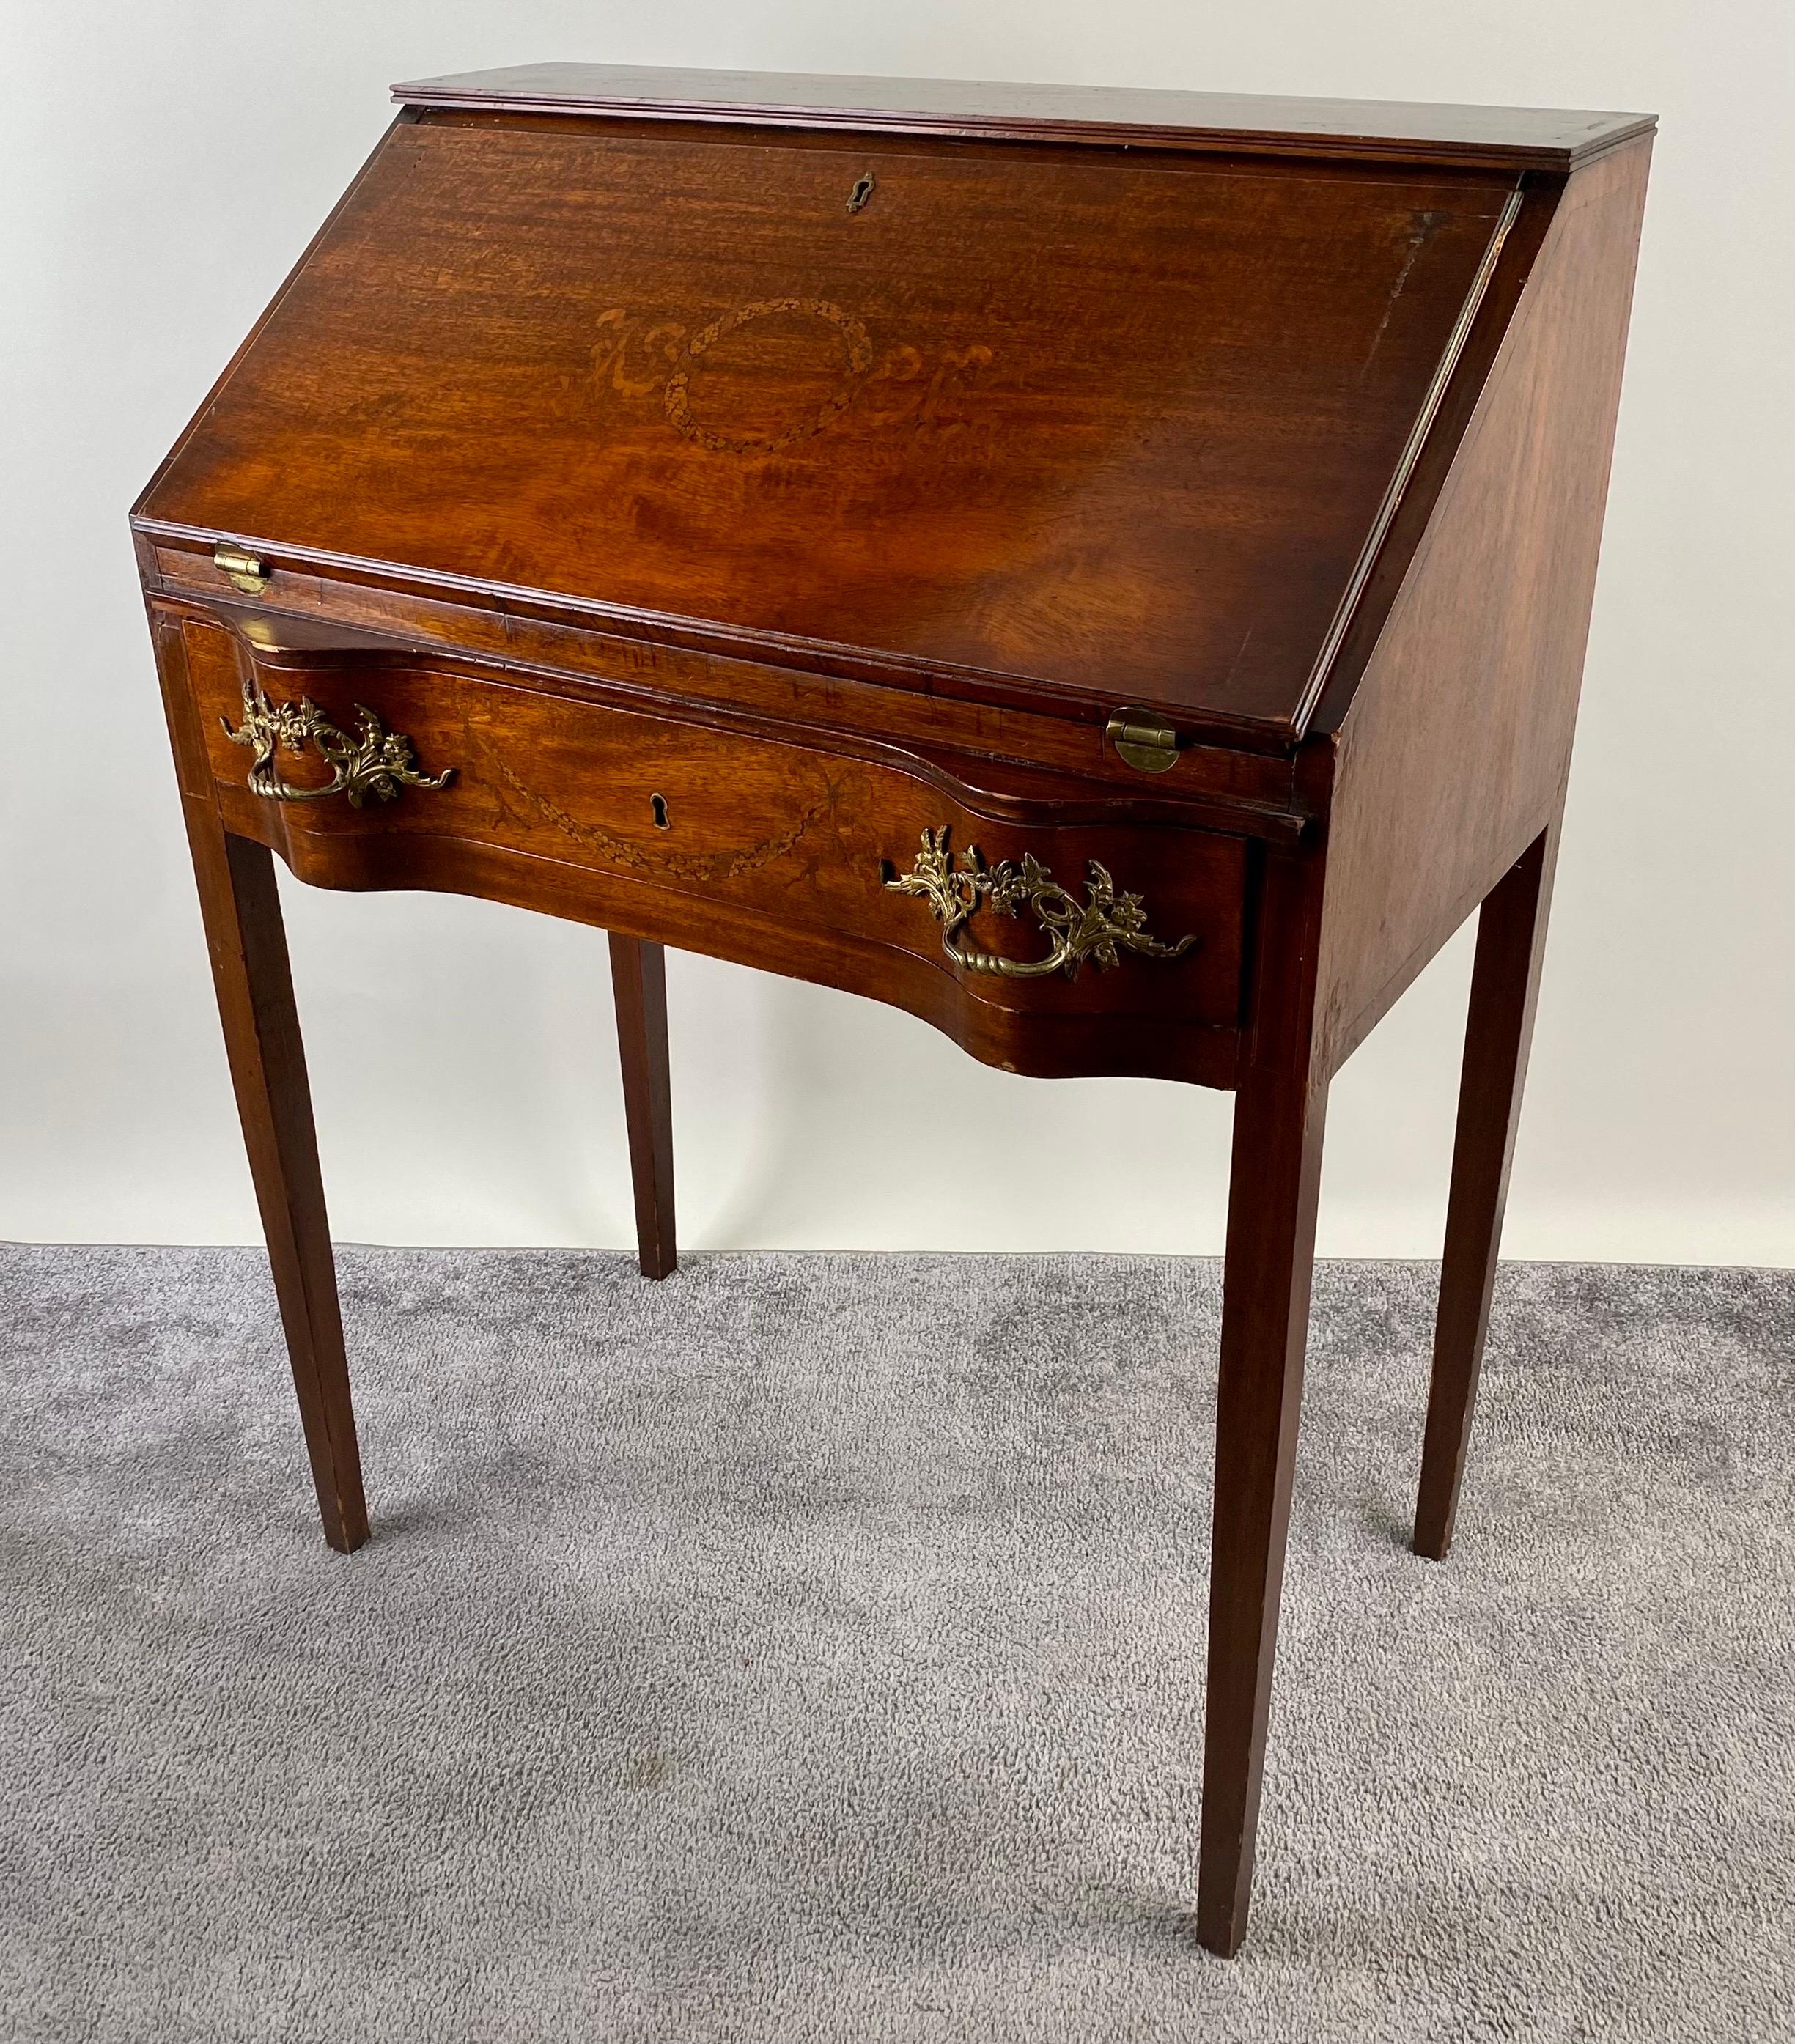 Ein antiker englischer Edwardianischer Schreibtisch mit schräger Front, eine wahre Verkörperung der raffinierten Handwerkskunst der frühen 1900er Jahre. Dieses Meisterwerk aus edlem Mahagoniholz besticht durch die aufwändige Intarsienarbeit, die die